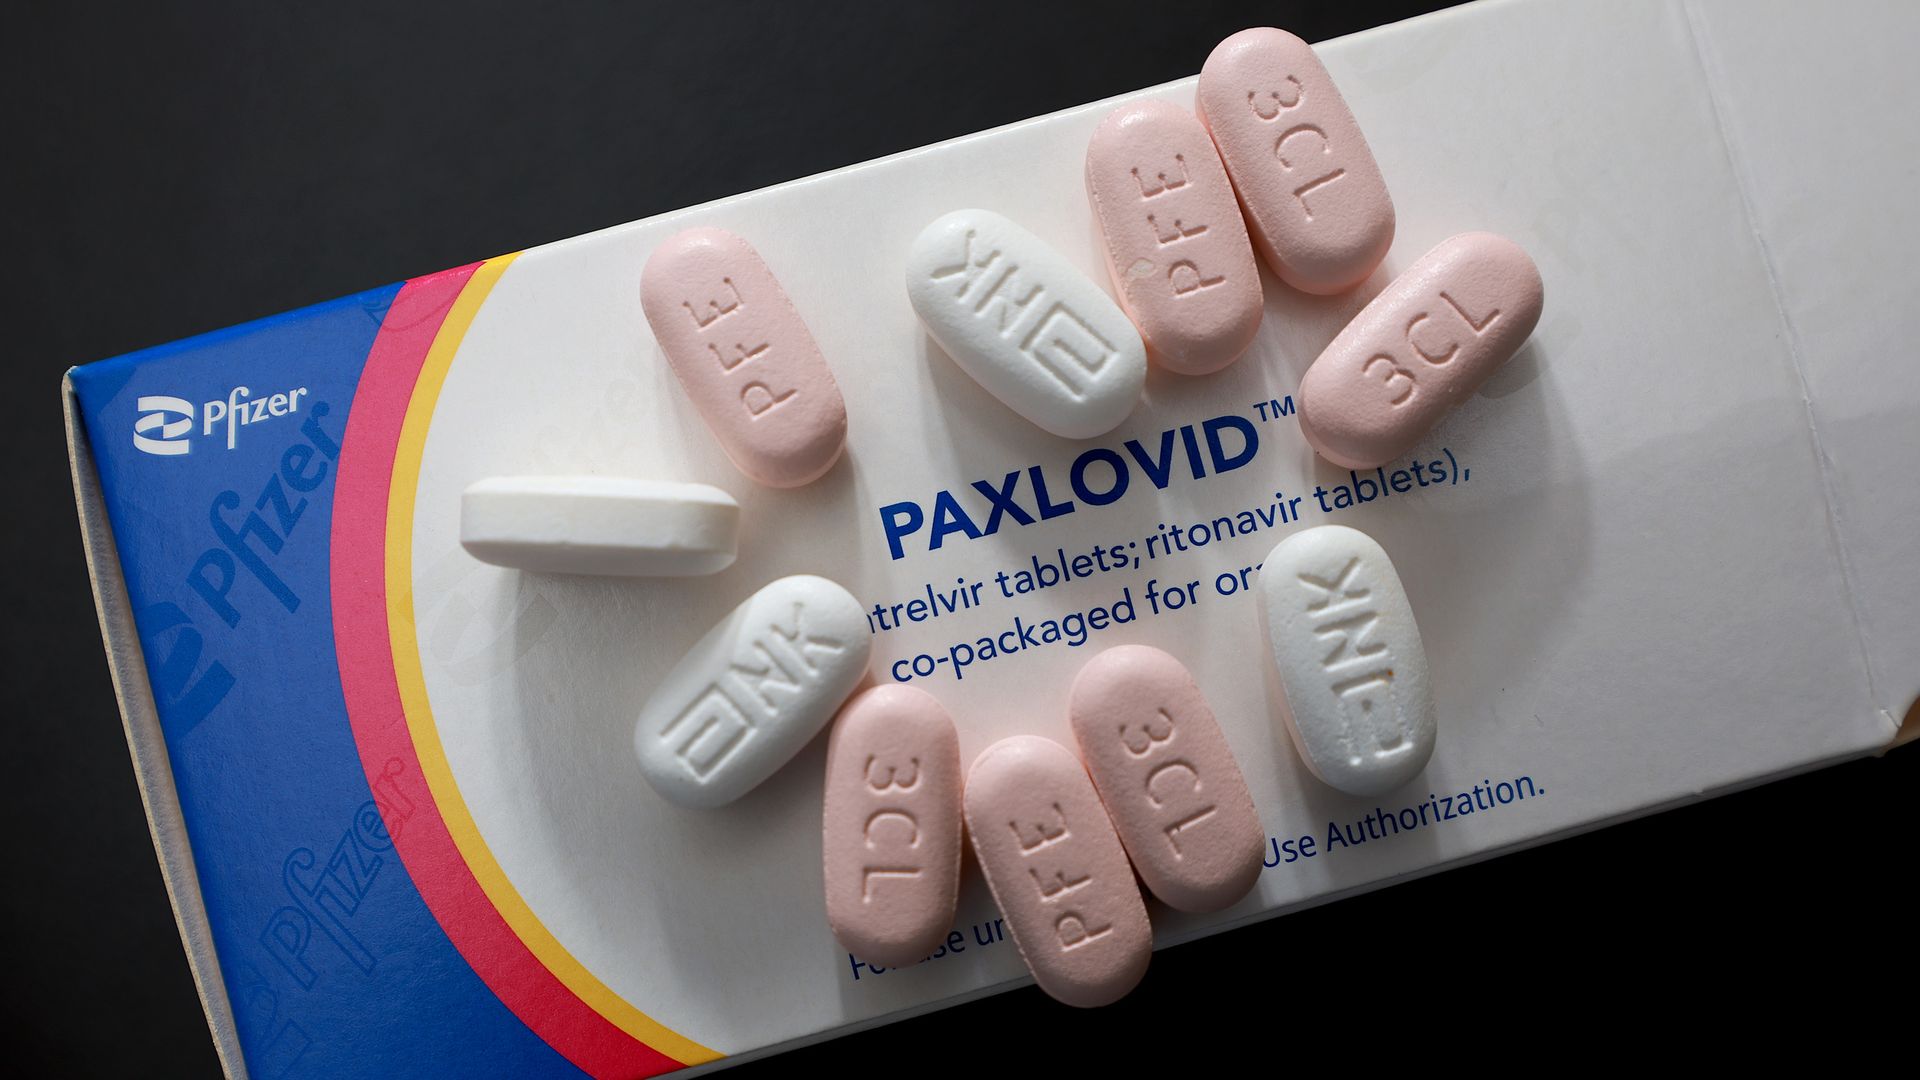 A box of Paxlovid.